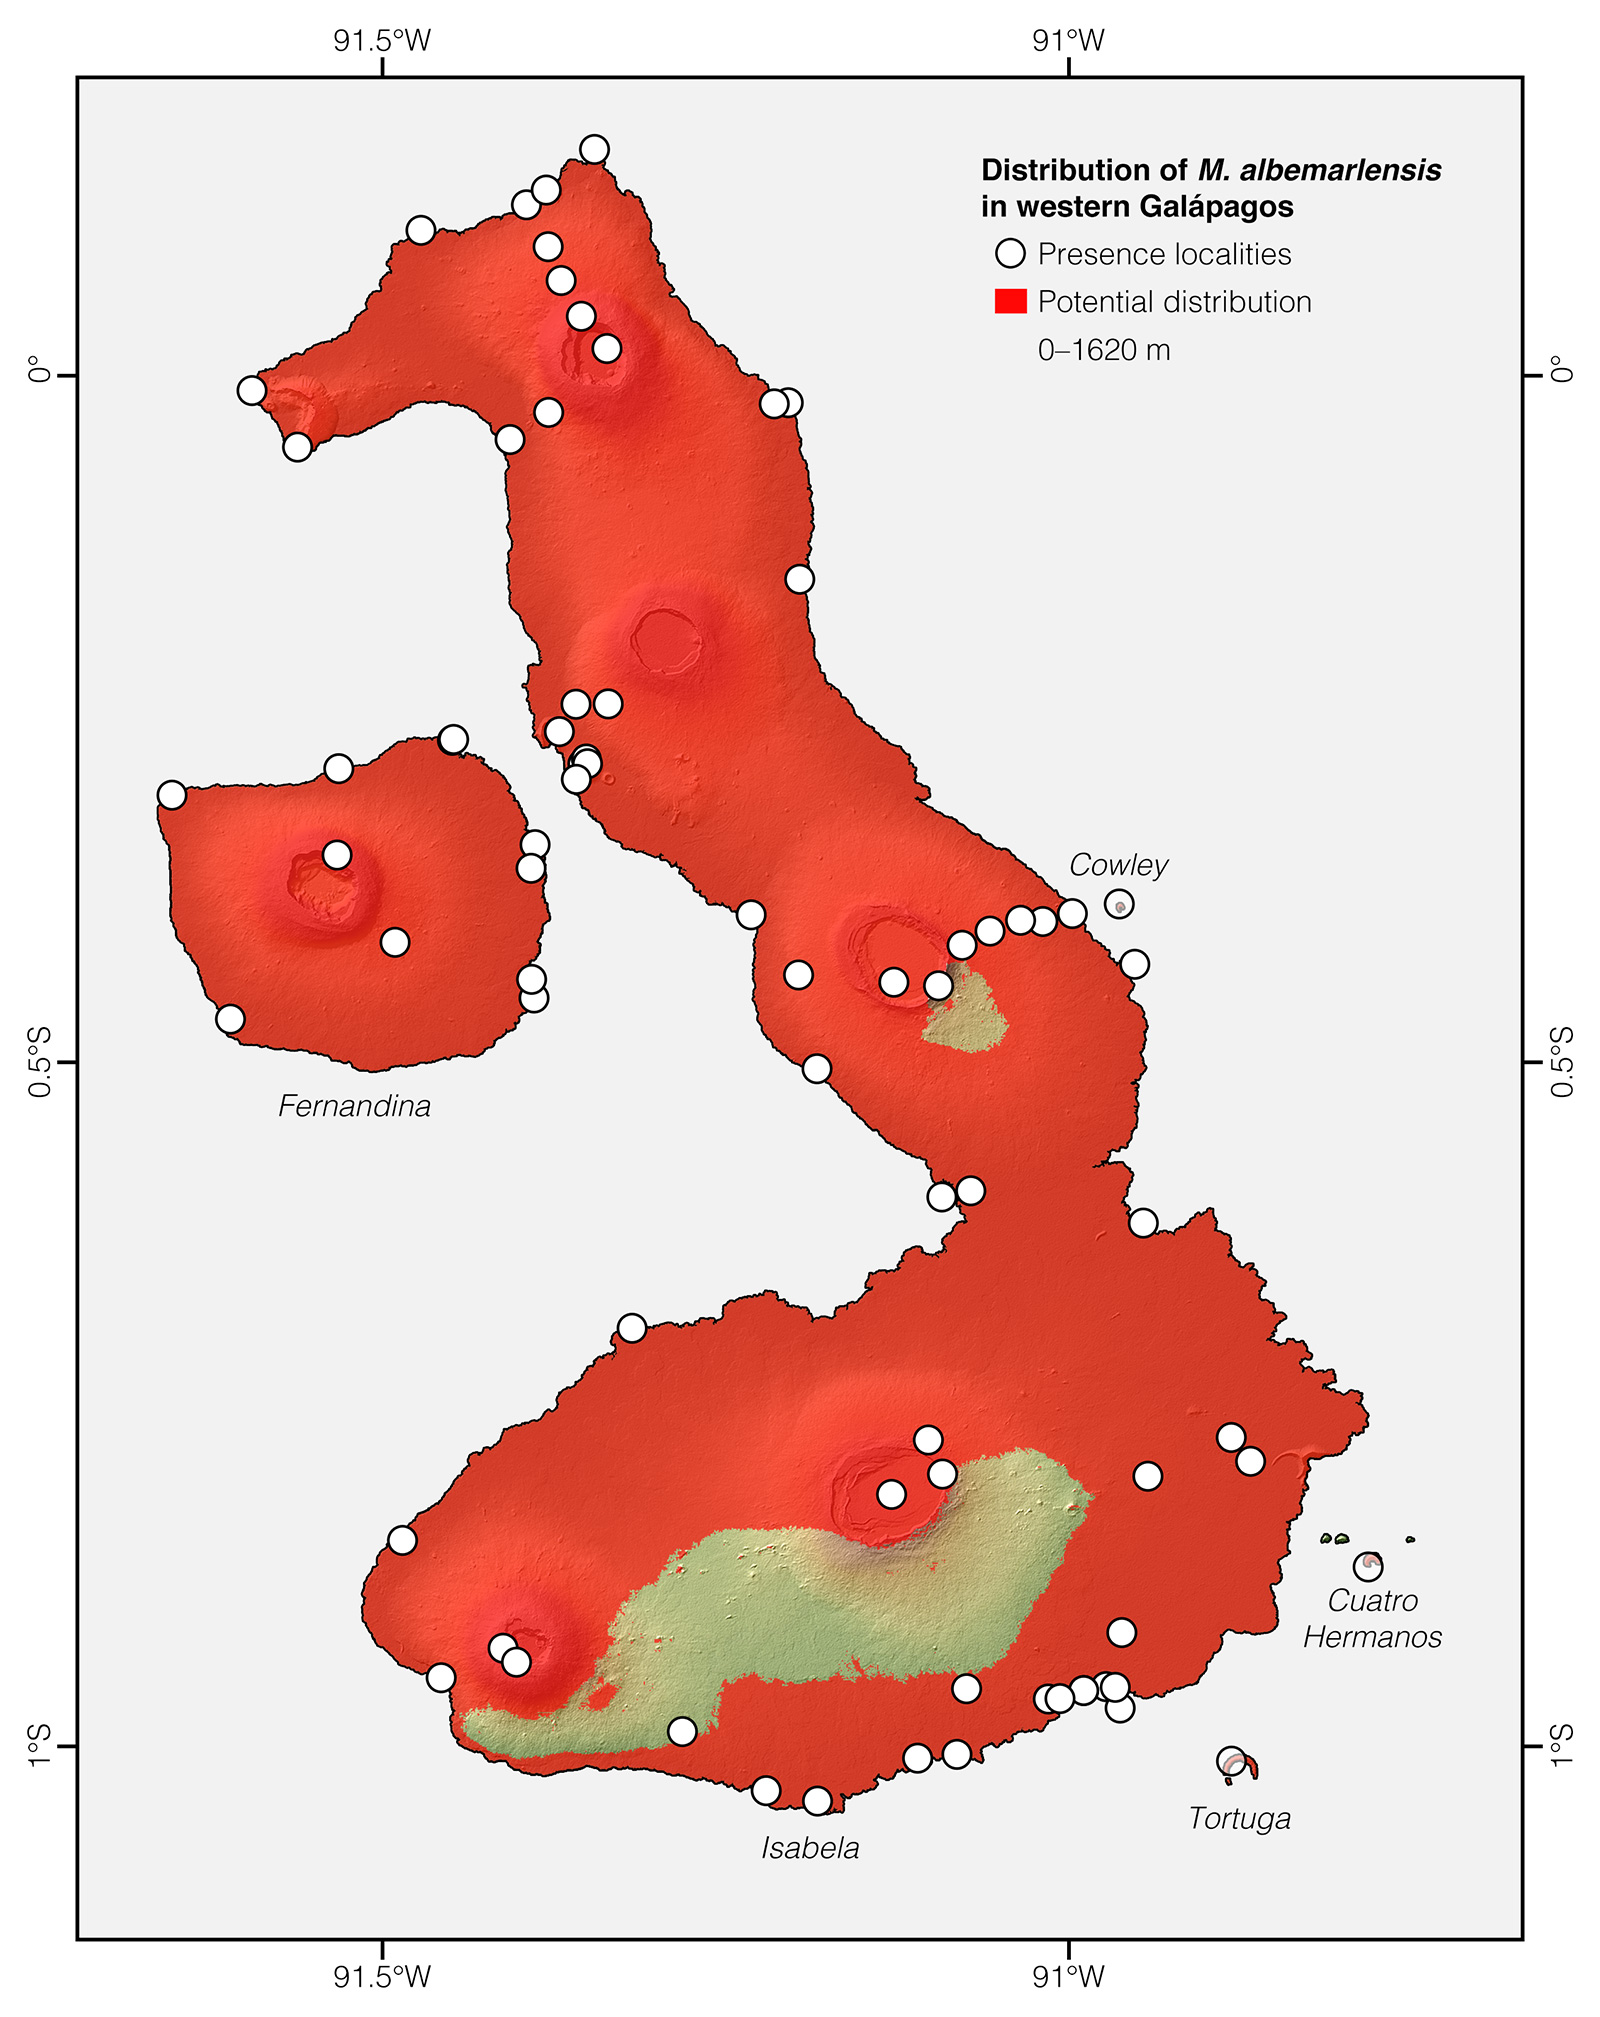 Distribution of Microlophus albemarlensis in western Galápagos